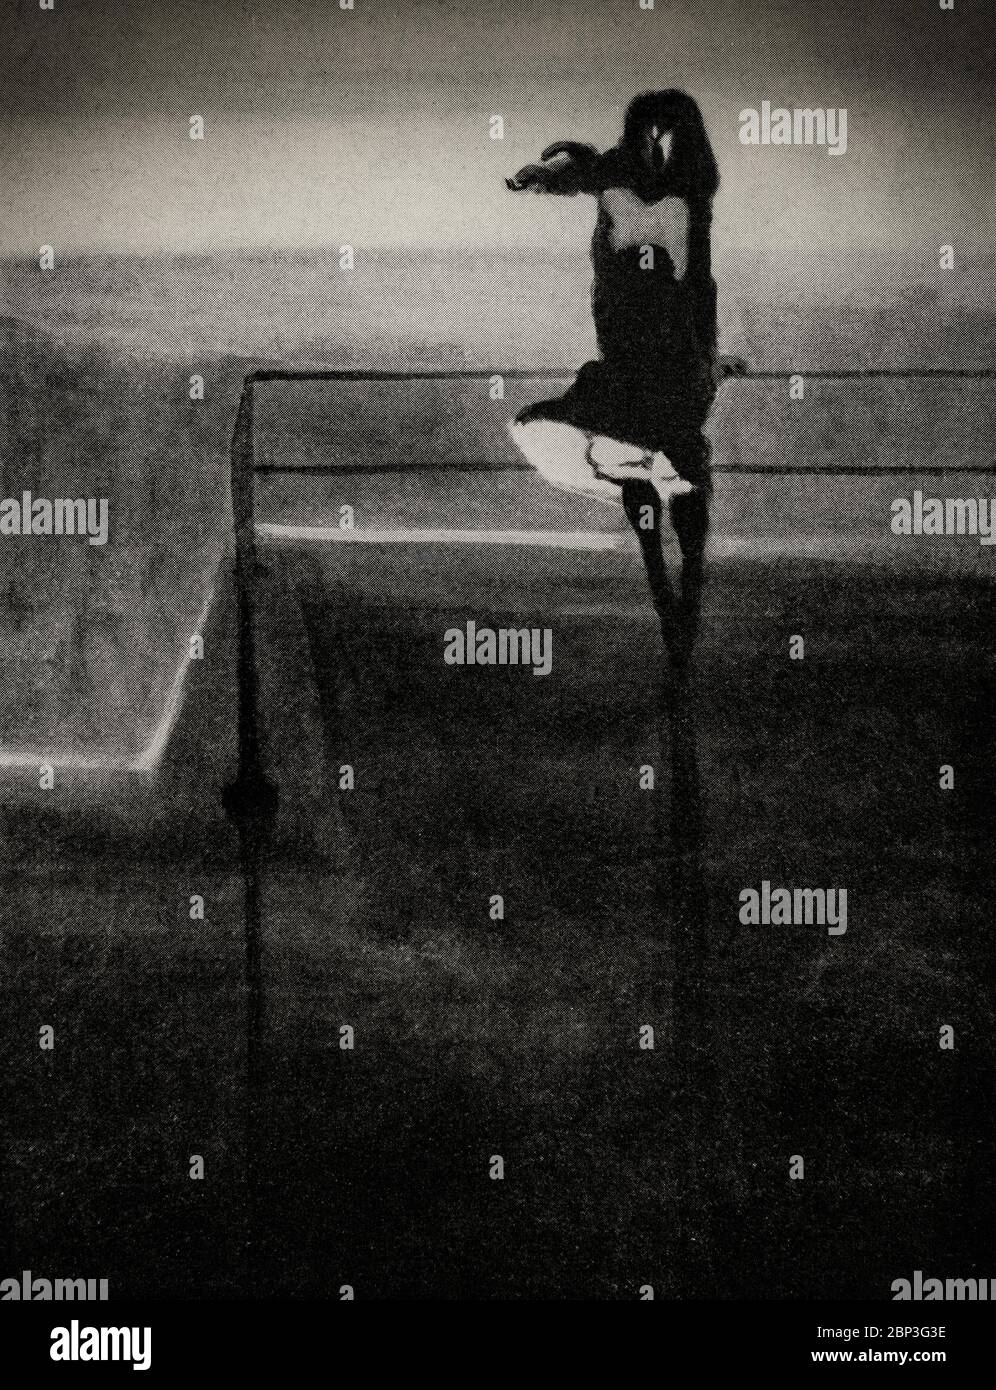 'Windböe' von Léon Spilliaert (1881-1946), einem belgischen Symbolisten und Grafiker. Die meisten seiner Werke sind von einer bedrückenden, fremden und elegischen Atmosphäre geprägt, die häufig eine einsamen Figur in einem traumhaften Raum darstellt und ein Gefühl von Melancholie und Stille vermittelt. Spilliaerts expressiver Gebrauch von Schwarz findet Parallelen in der Arbeit von Odilon Redon, der einen bedeutenden Einfluss hatte. Stockfoto